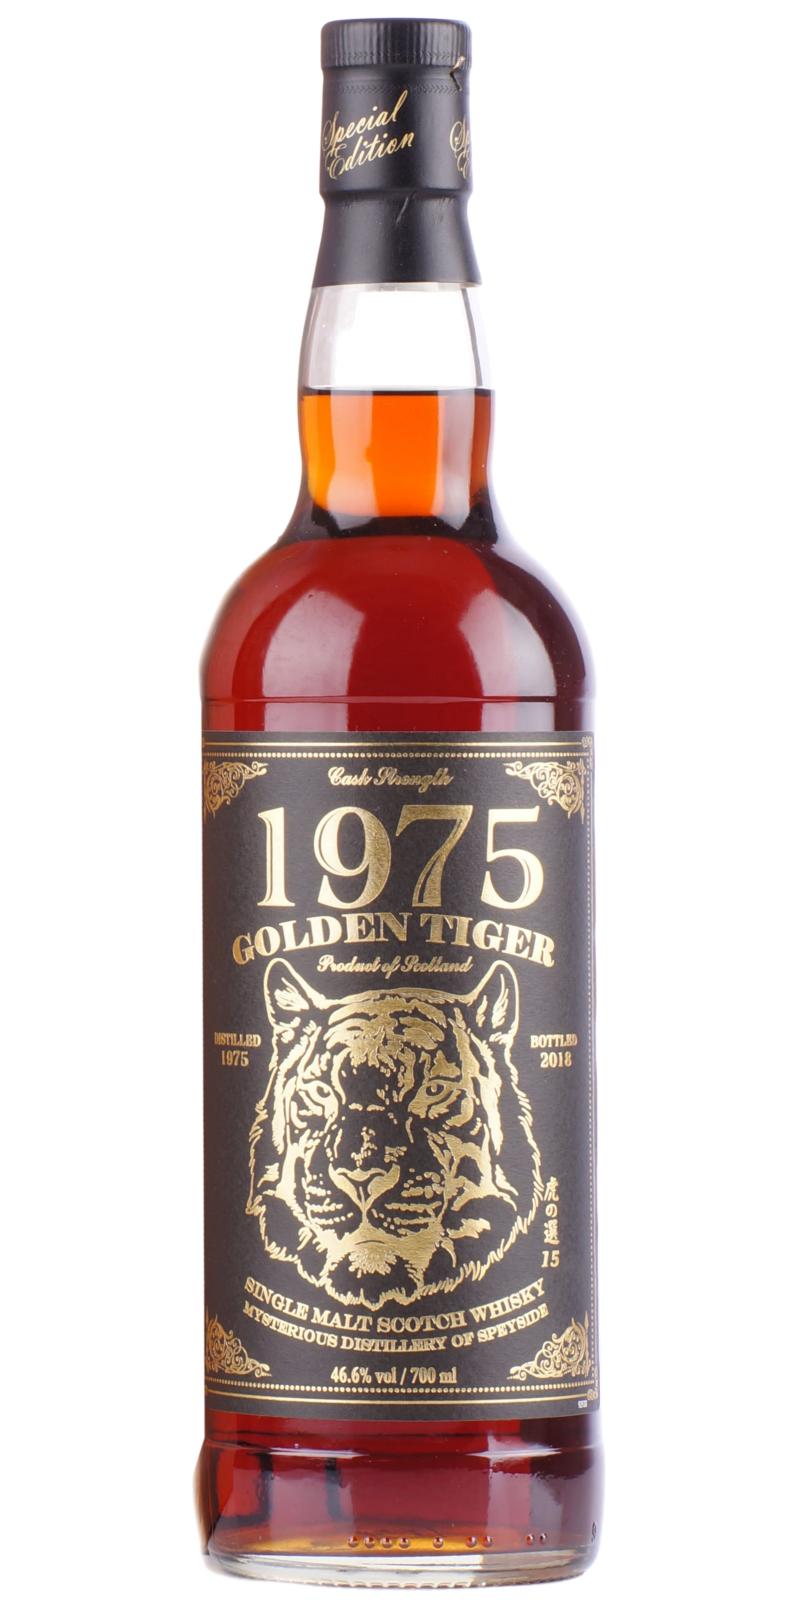 Golden Tiger 1975 IM #2688 46.6% 700ml